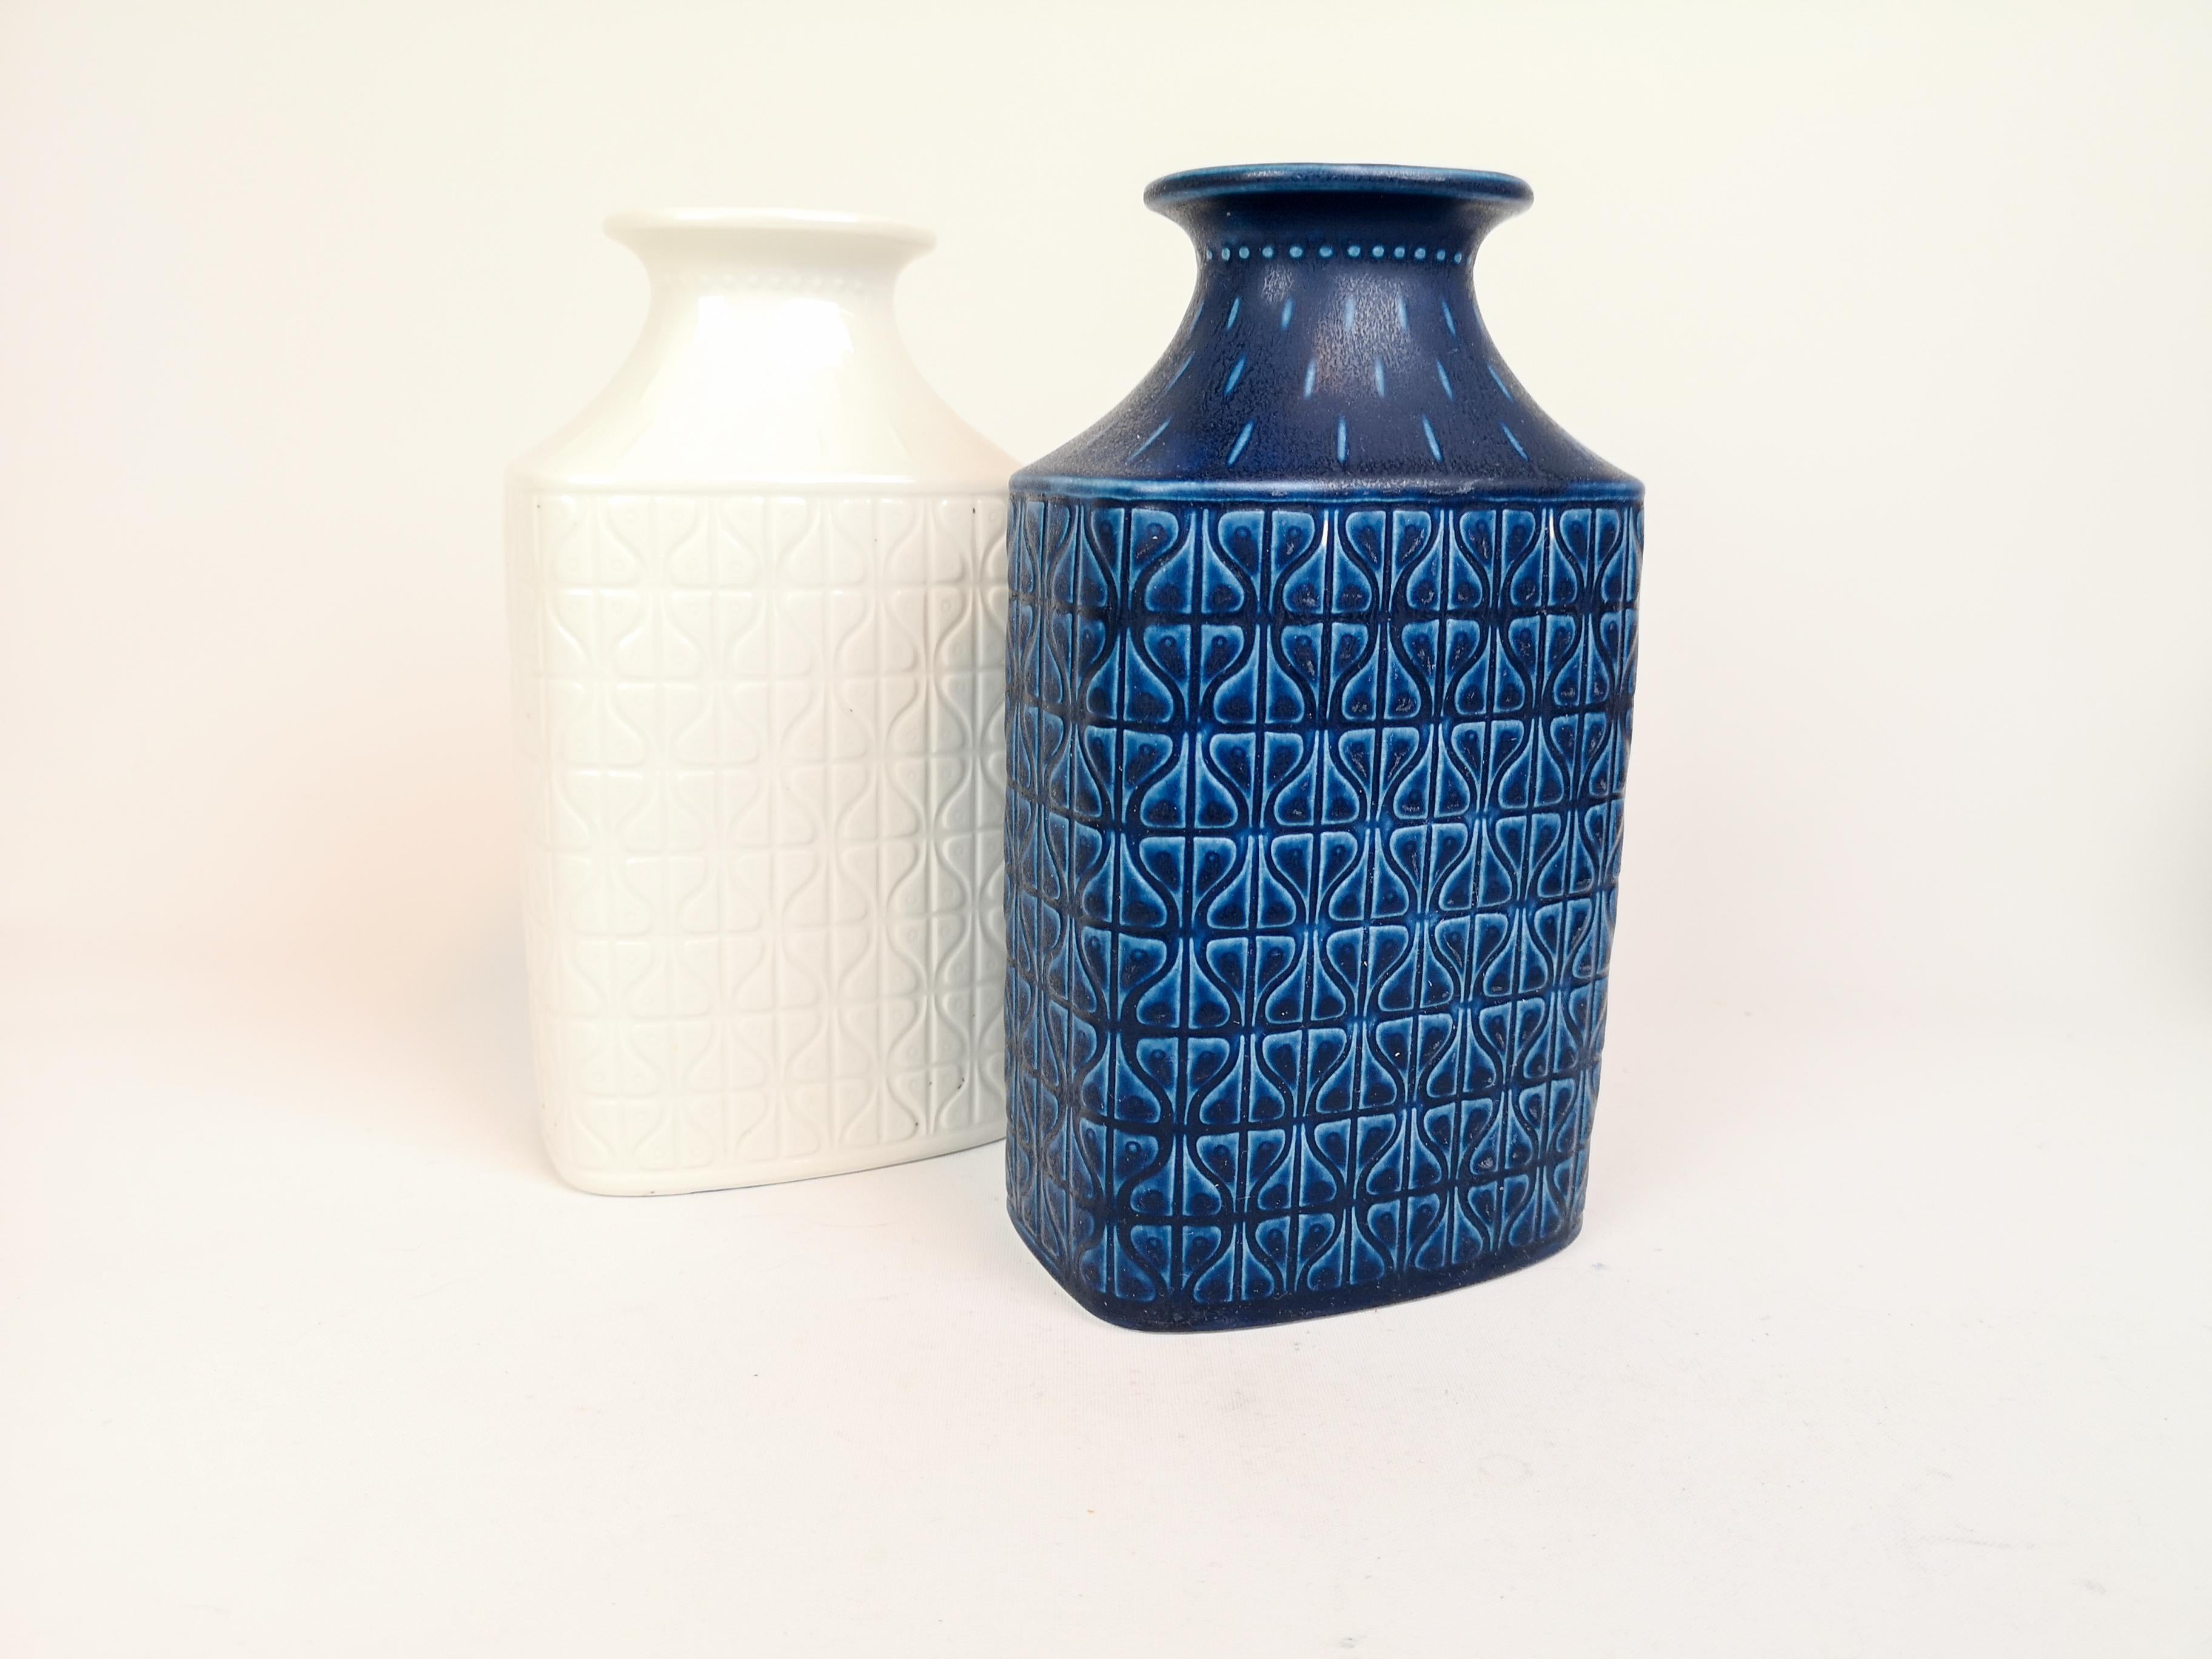 Vases created 